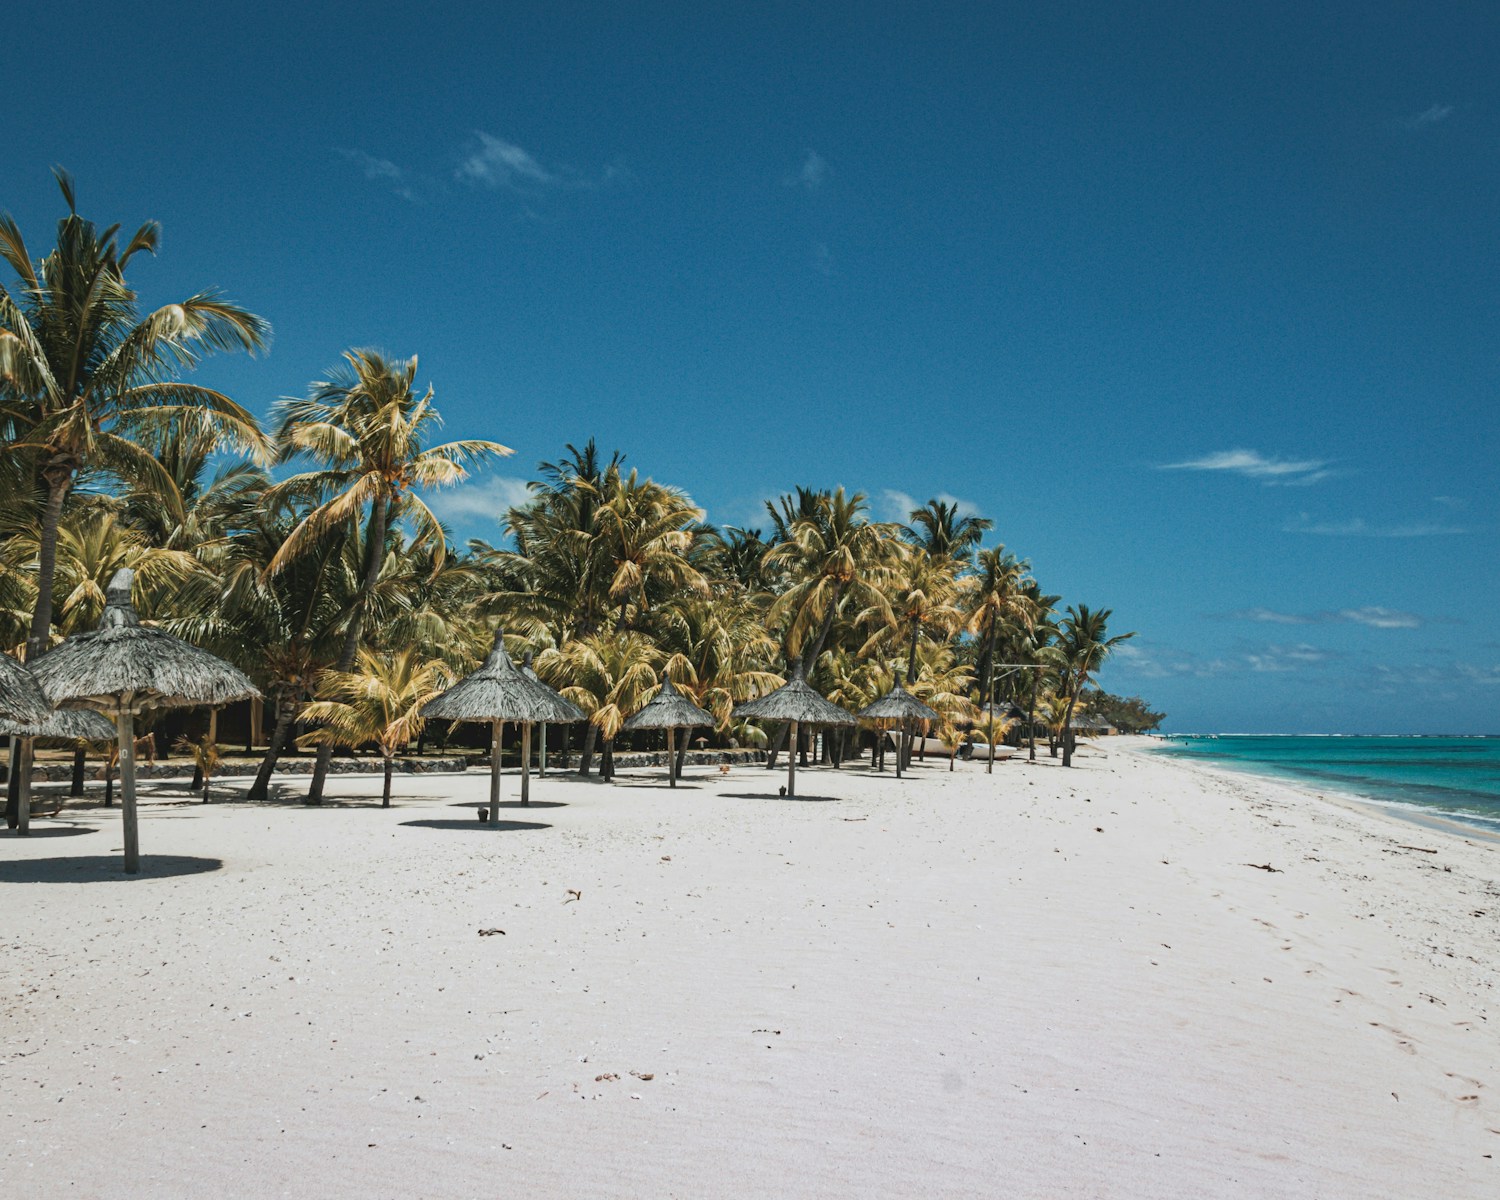 voyage de noces à l'île Maurice : escapade romantique garantie